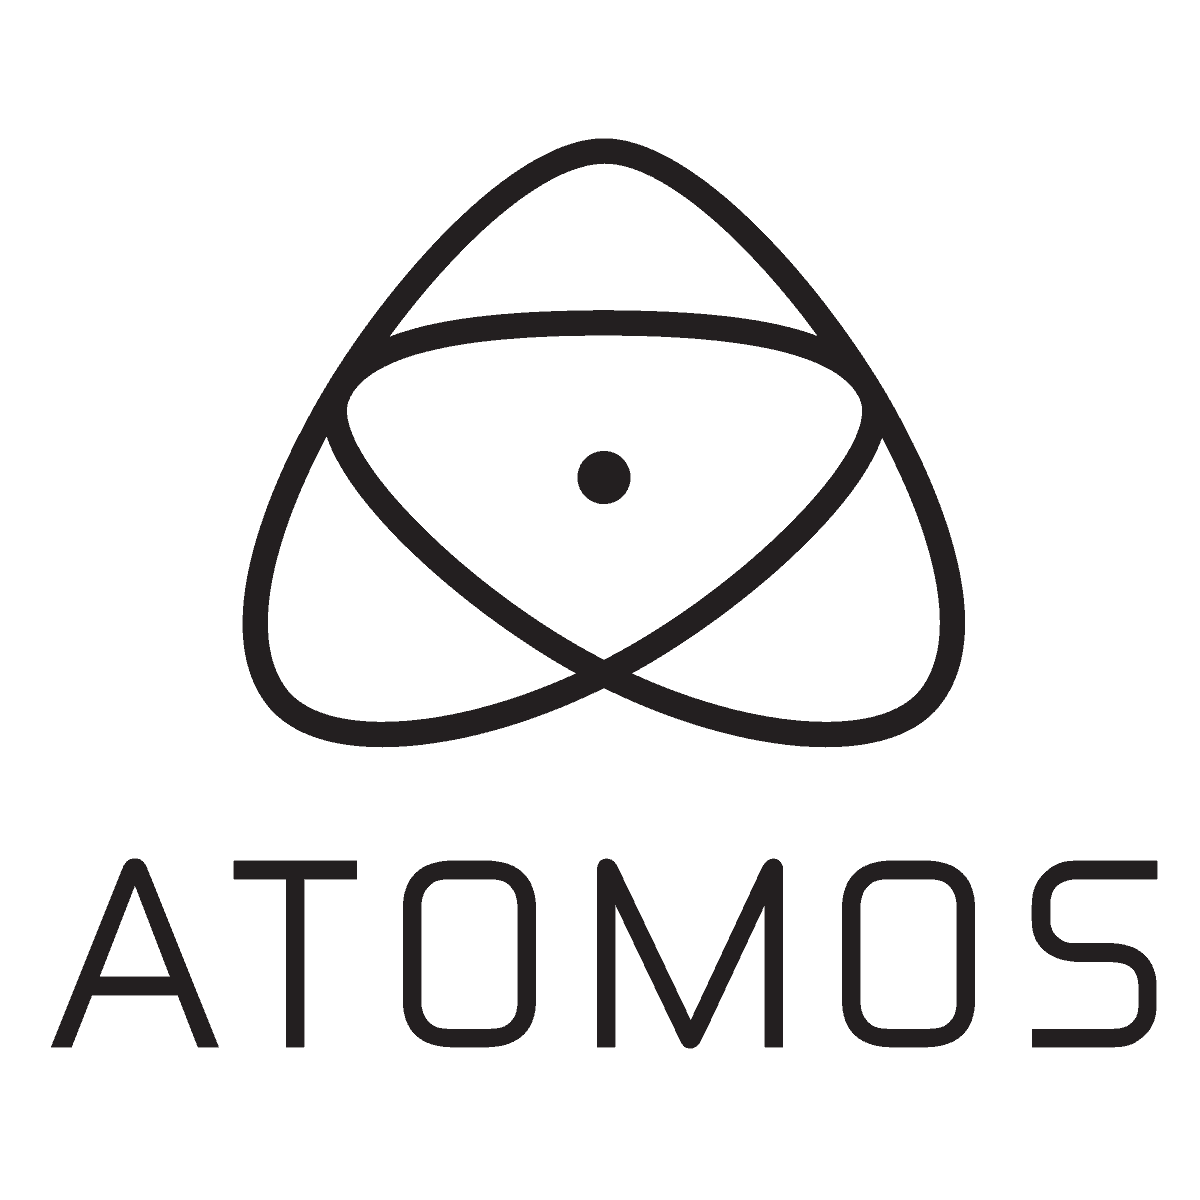 atomos